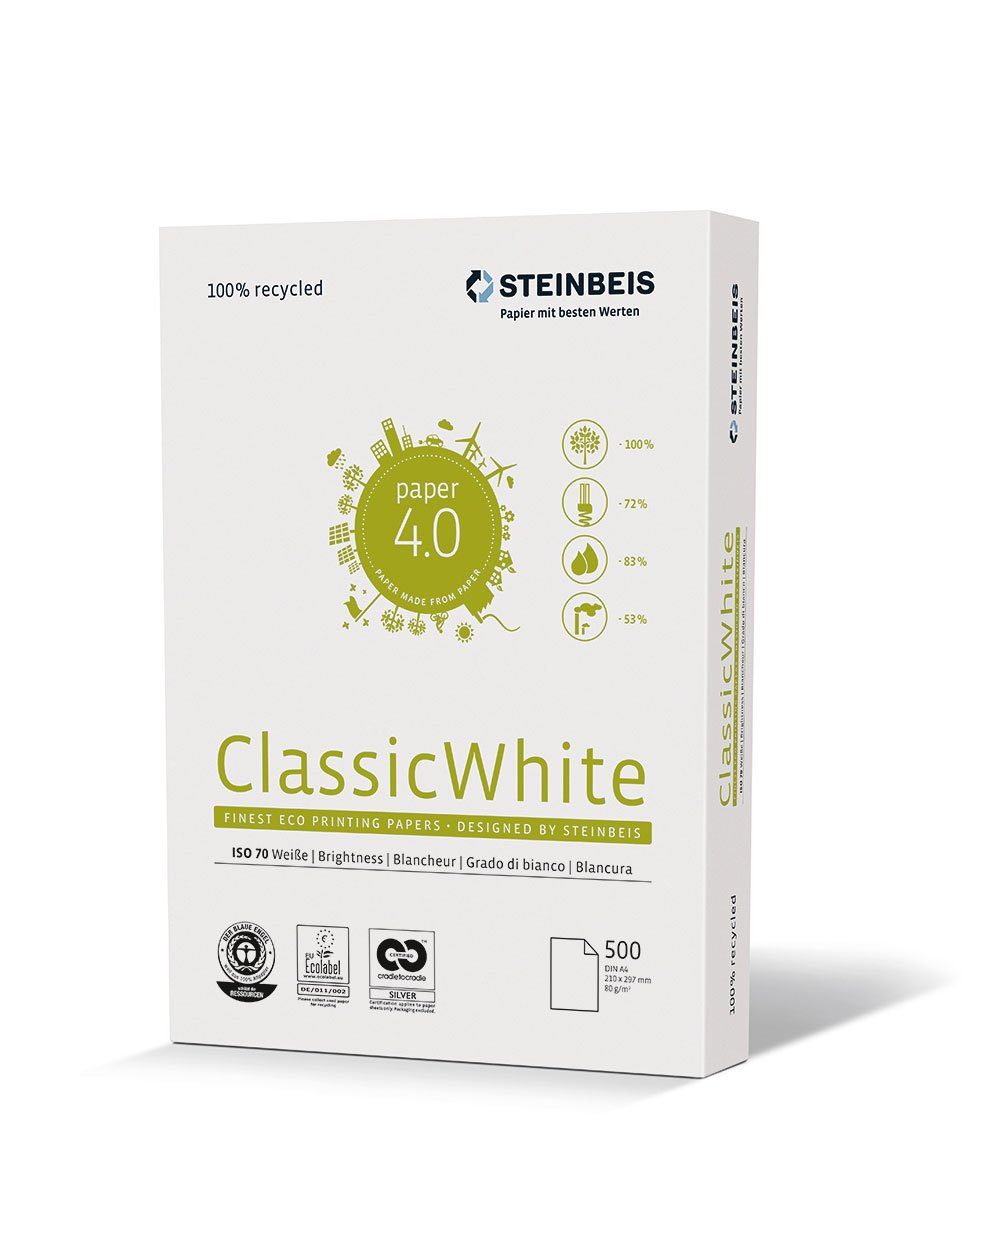 080 80g, - 5216 Blatt weiß, White STEINBEIS 500 10 Druckerpapier Steinbeis Cl- 00 1 A4, Assic